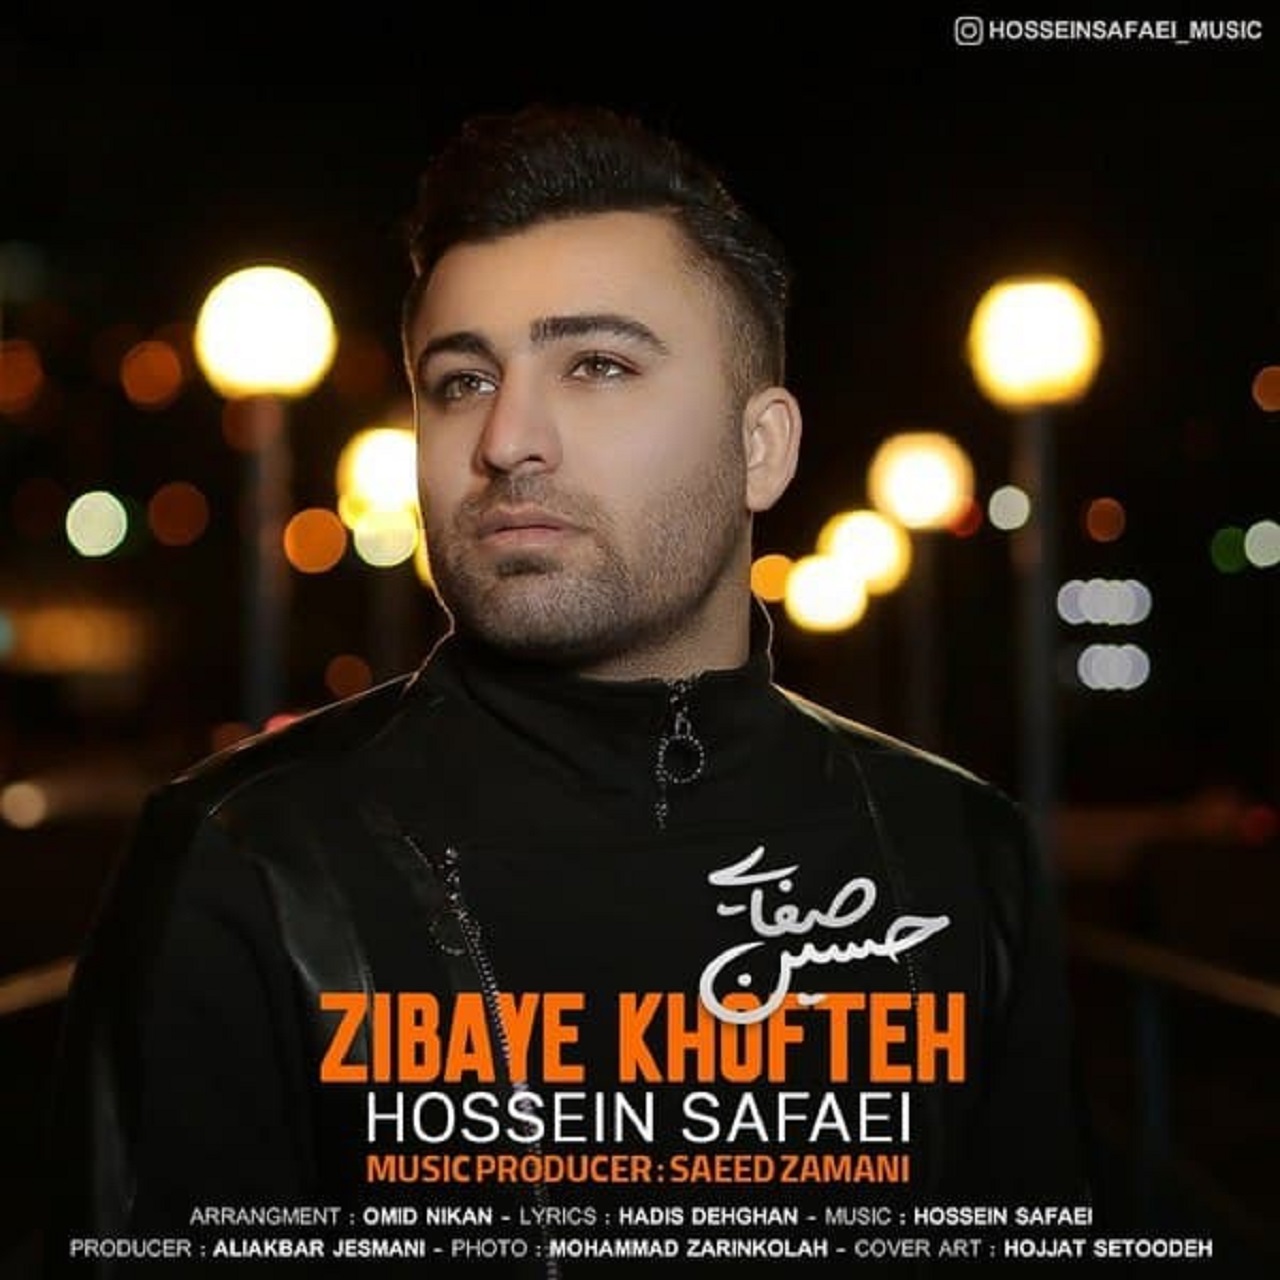  دانلود آهنگ جدید حسین صفایی - زیبای خفته | Download New Music By Hossein Safaei - Zibaye Khofteh